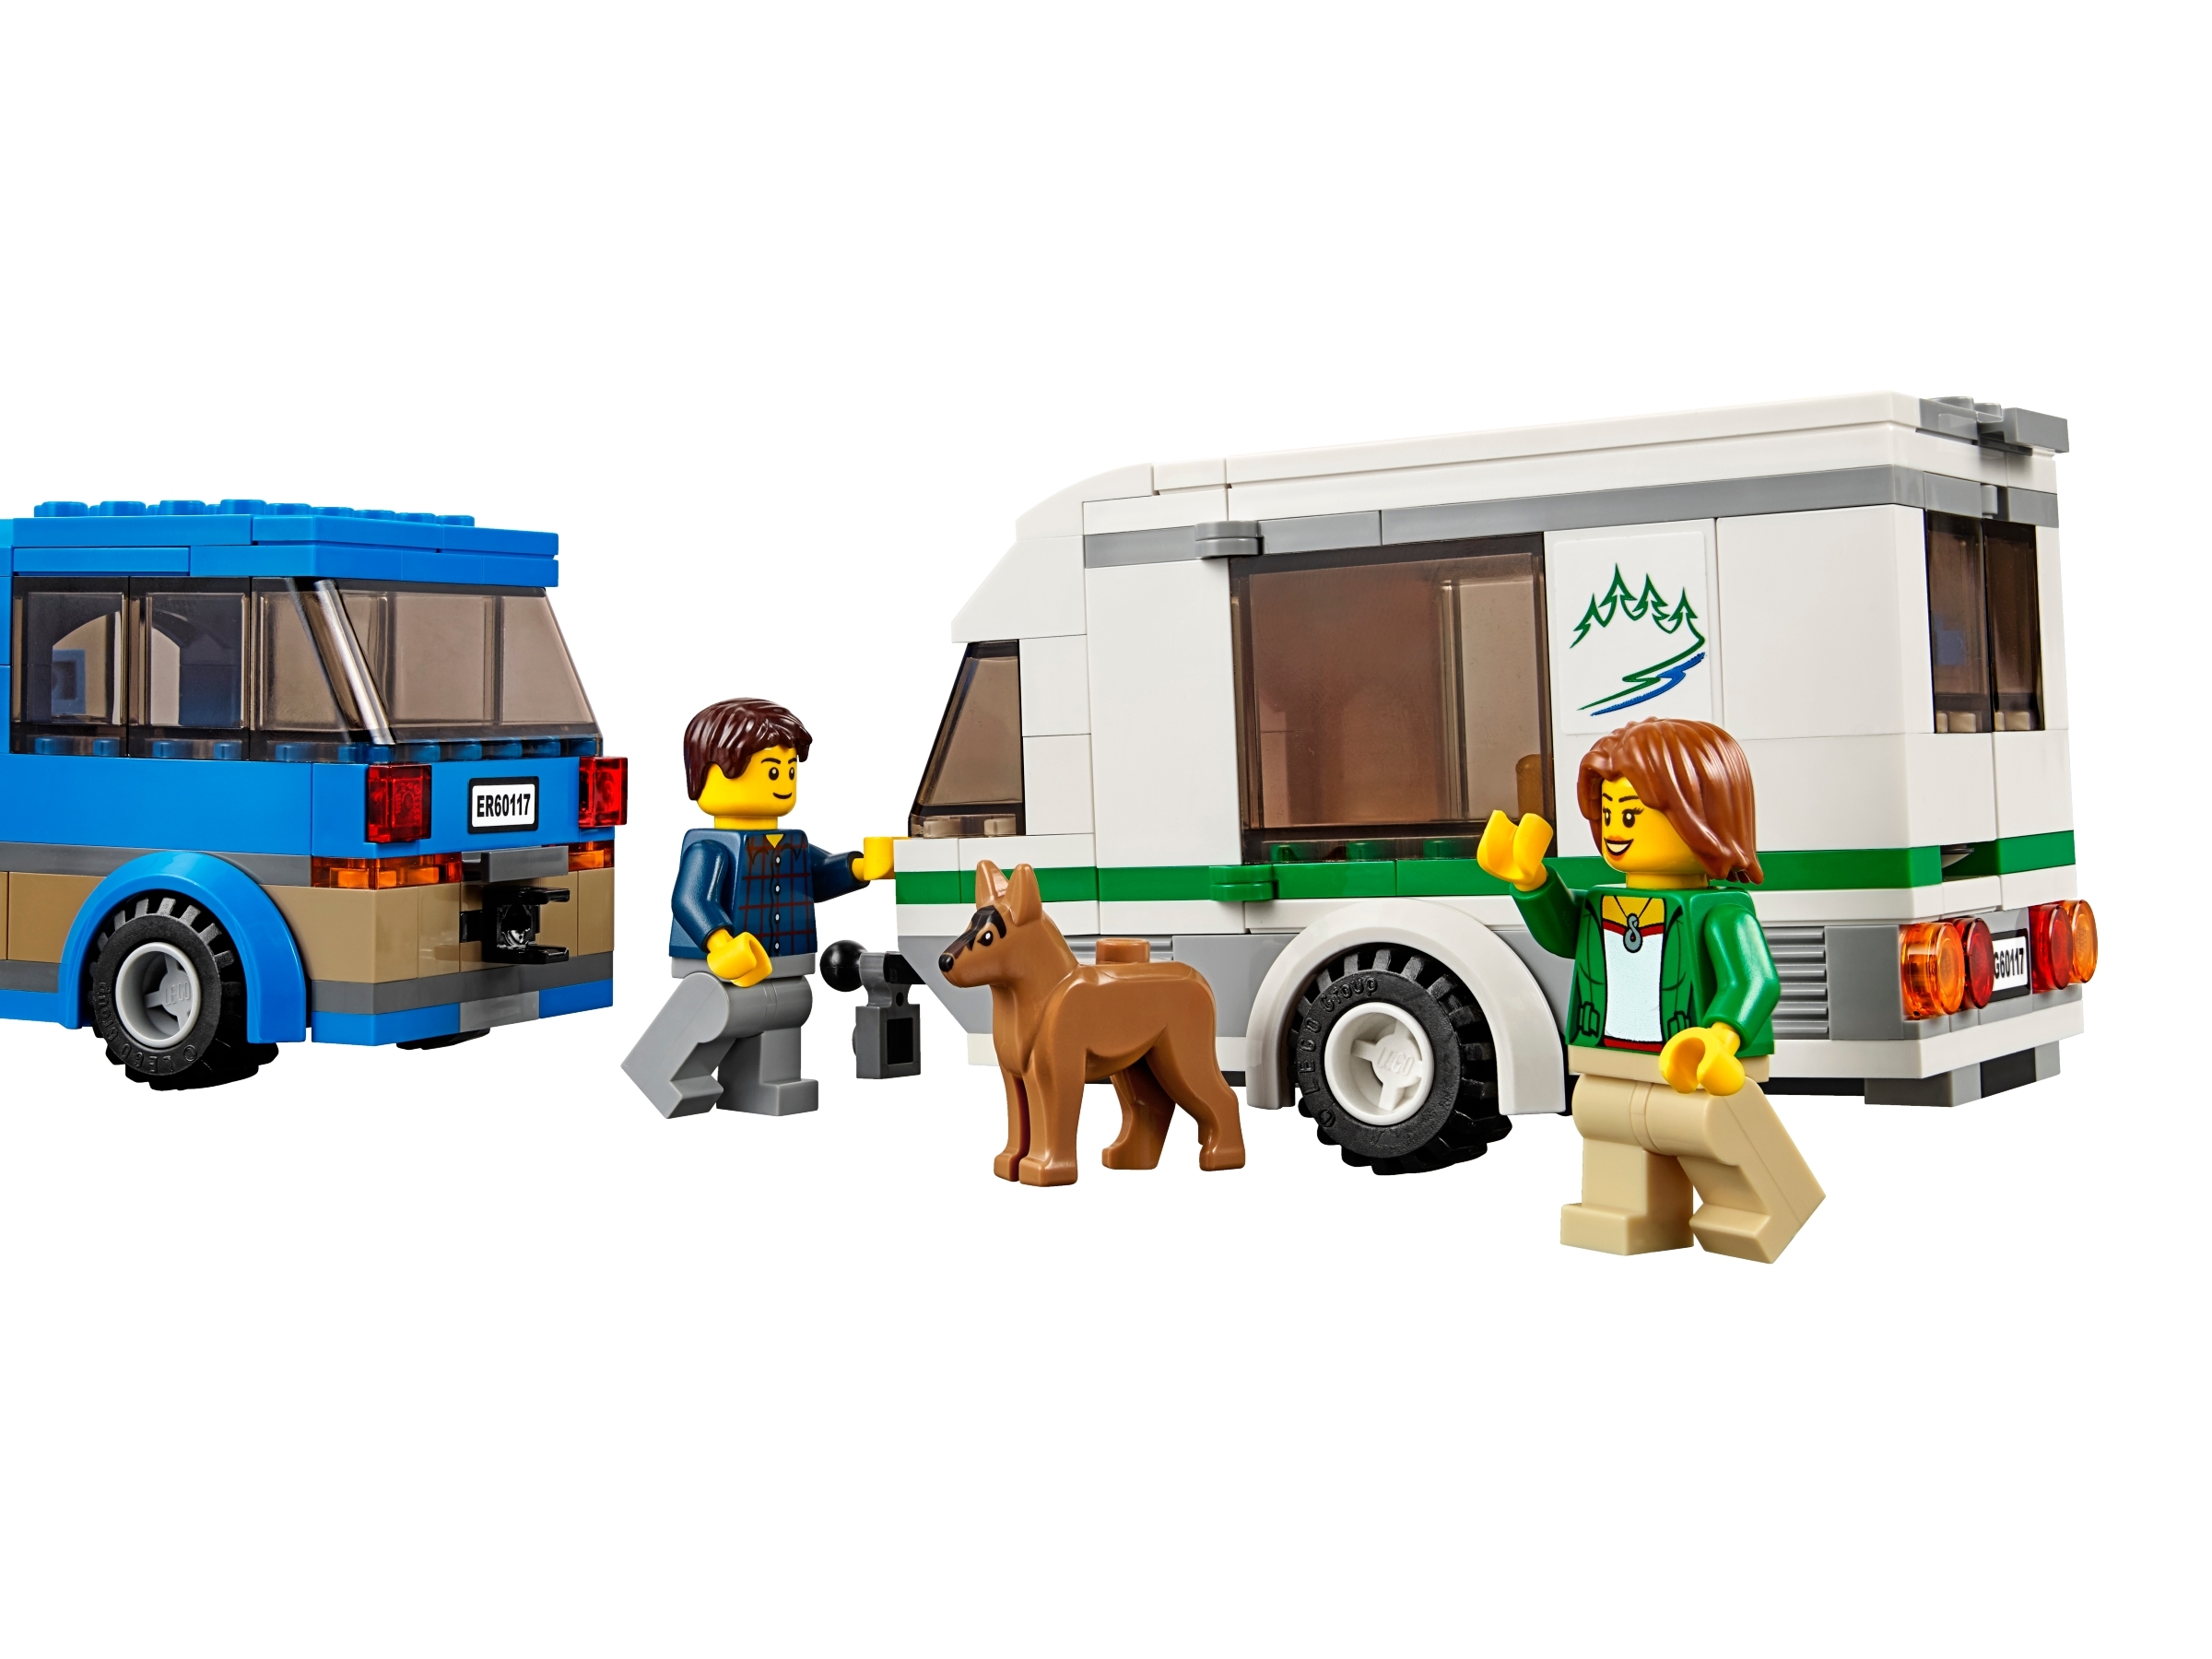 lego city great vehicles van & caravan 60117